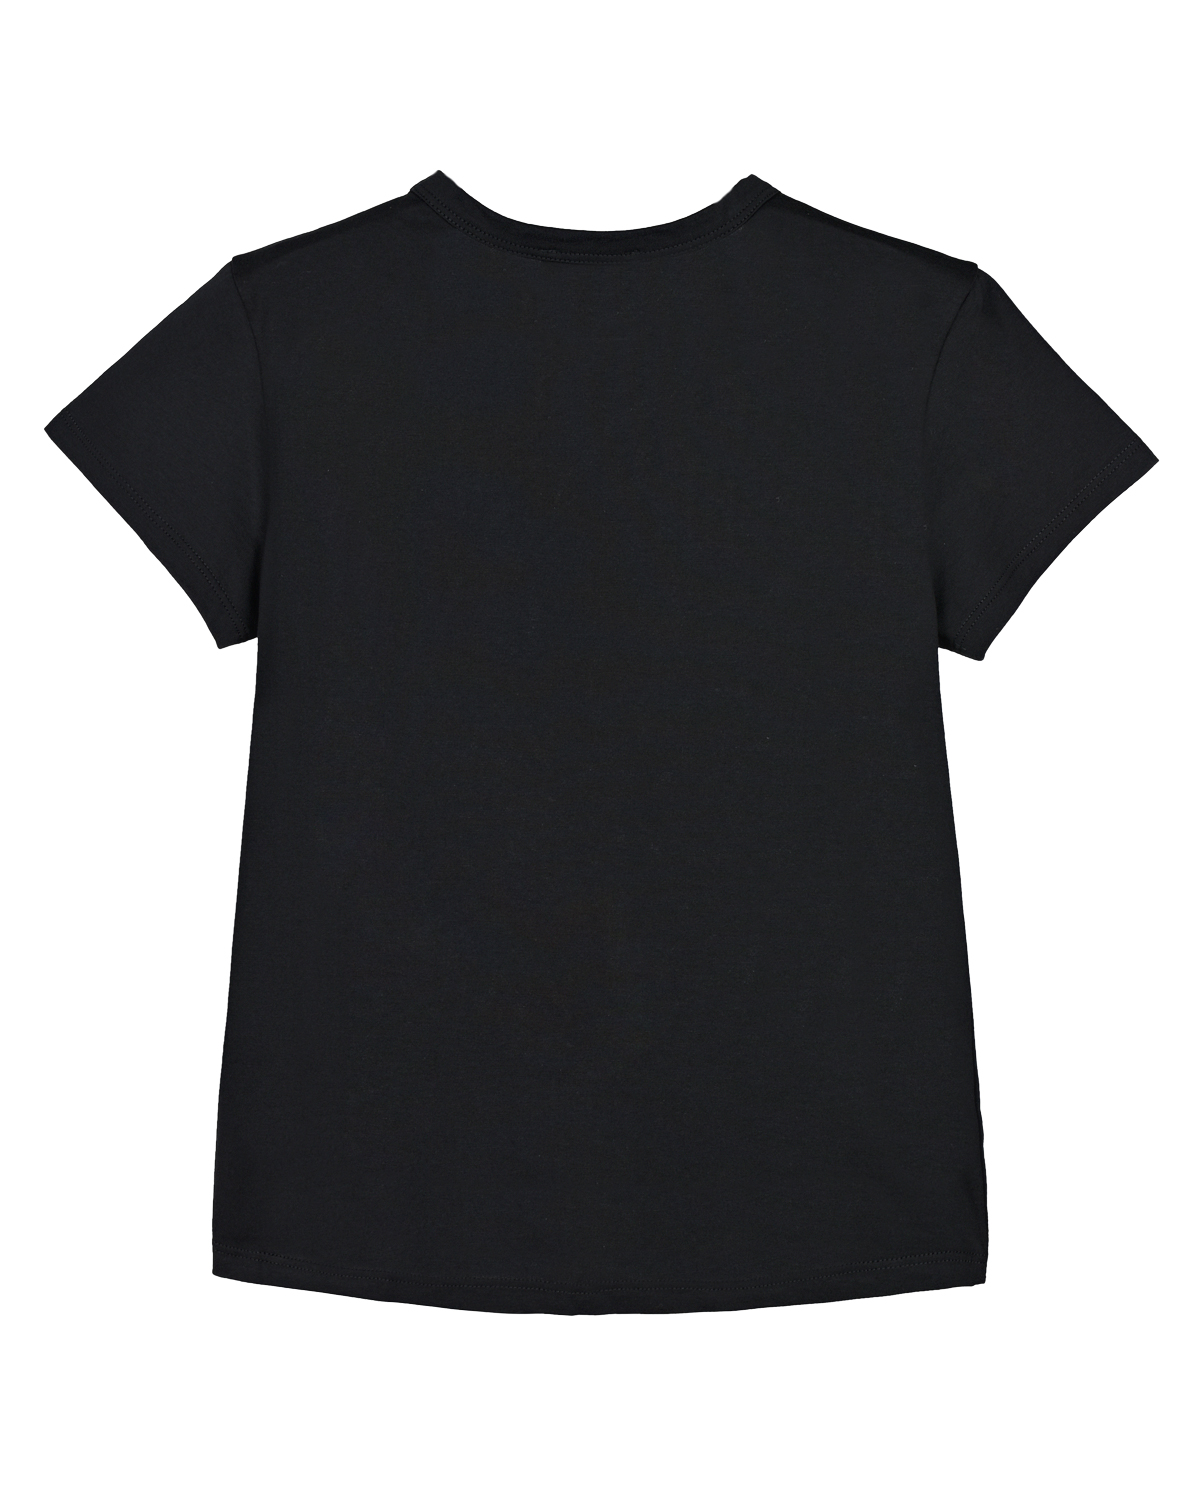 Черная футболка с зоолтым логотипом Givenchy детская, размер 128, цвет черный - фото 3